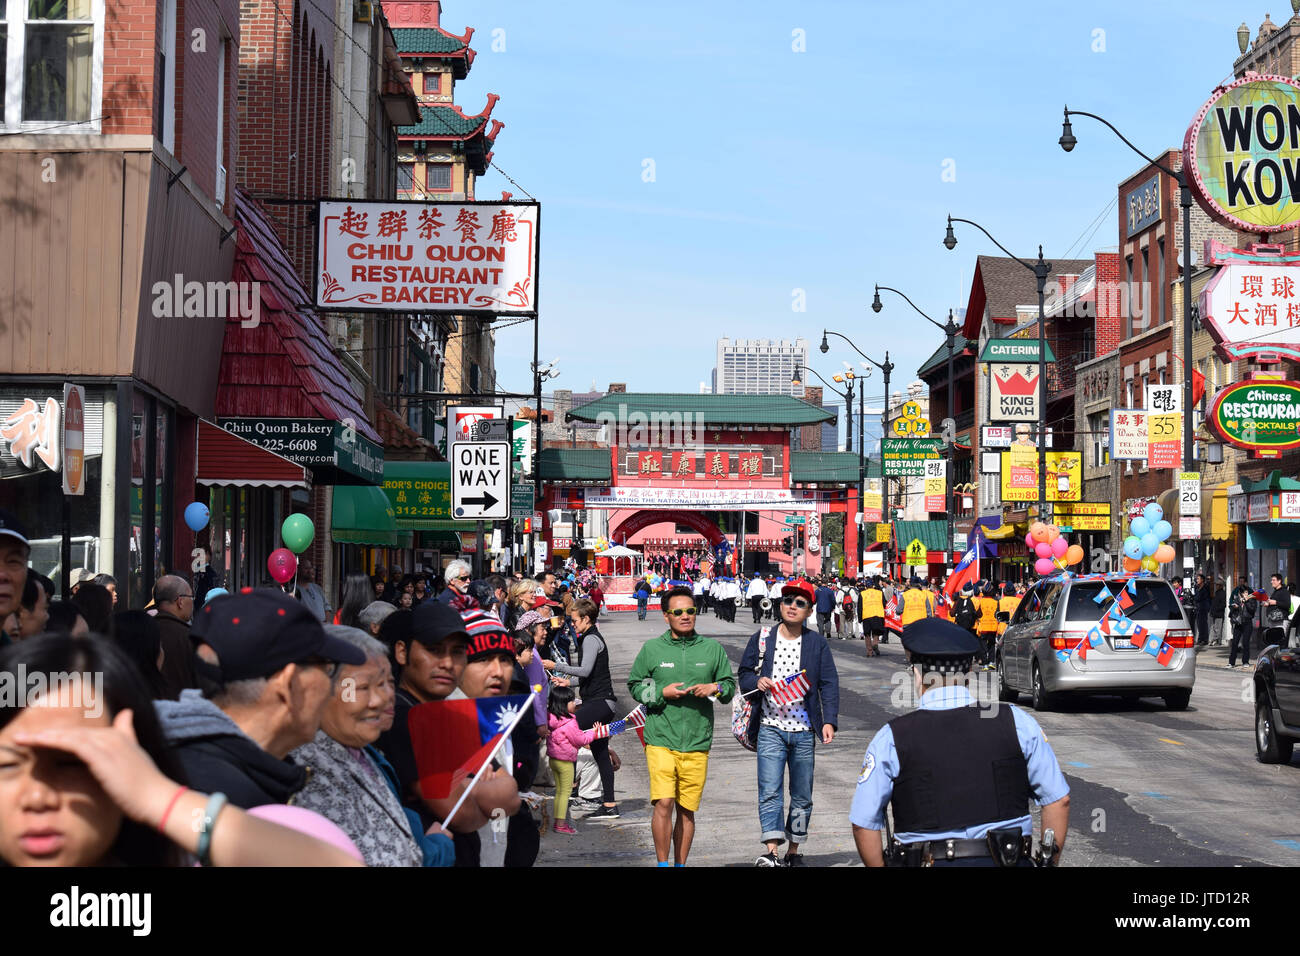 Les gens se rassemblent dans le quartier chinois de Chicago, célébrer le Jour de l'indépendance de Taiwan, également connu sous le nom de dix jours à la Double. (2015) Banque D'Images